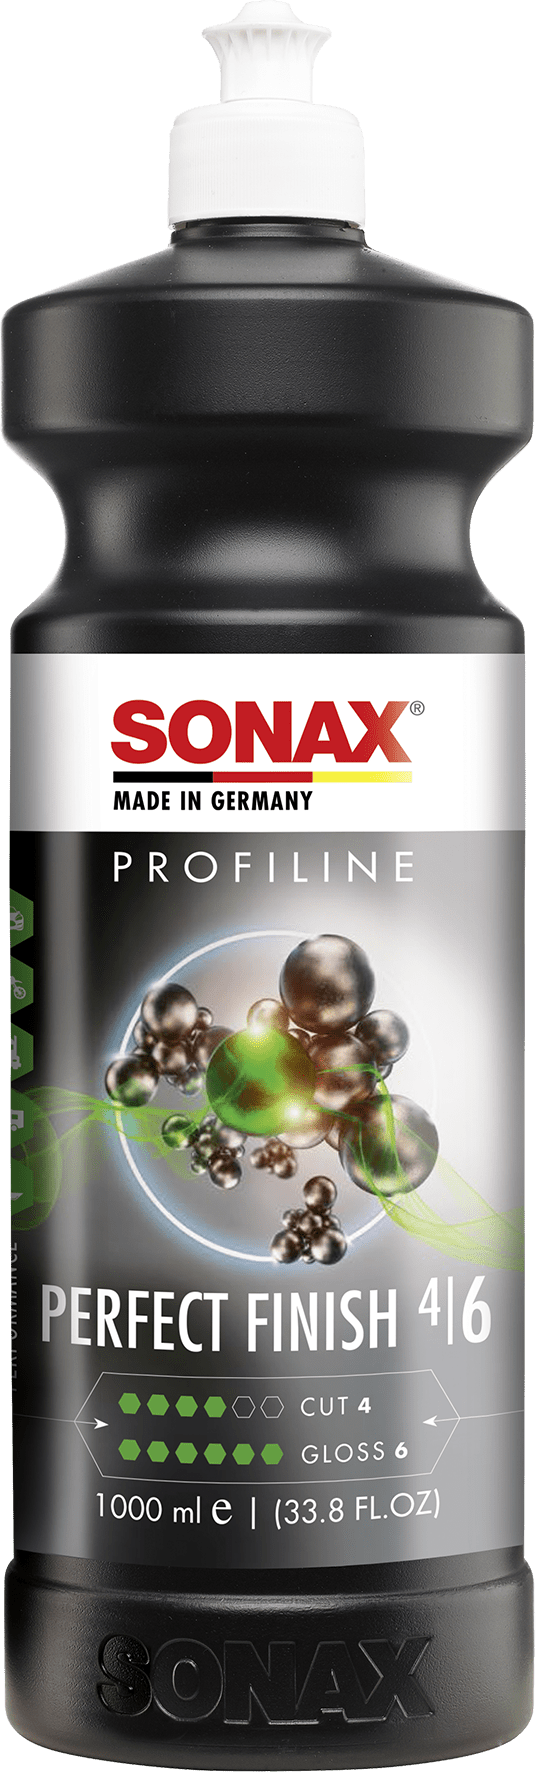 SONAX PROFILINE poliravimo pasta Perfect Finish, 1L